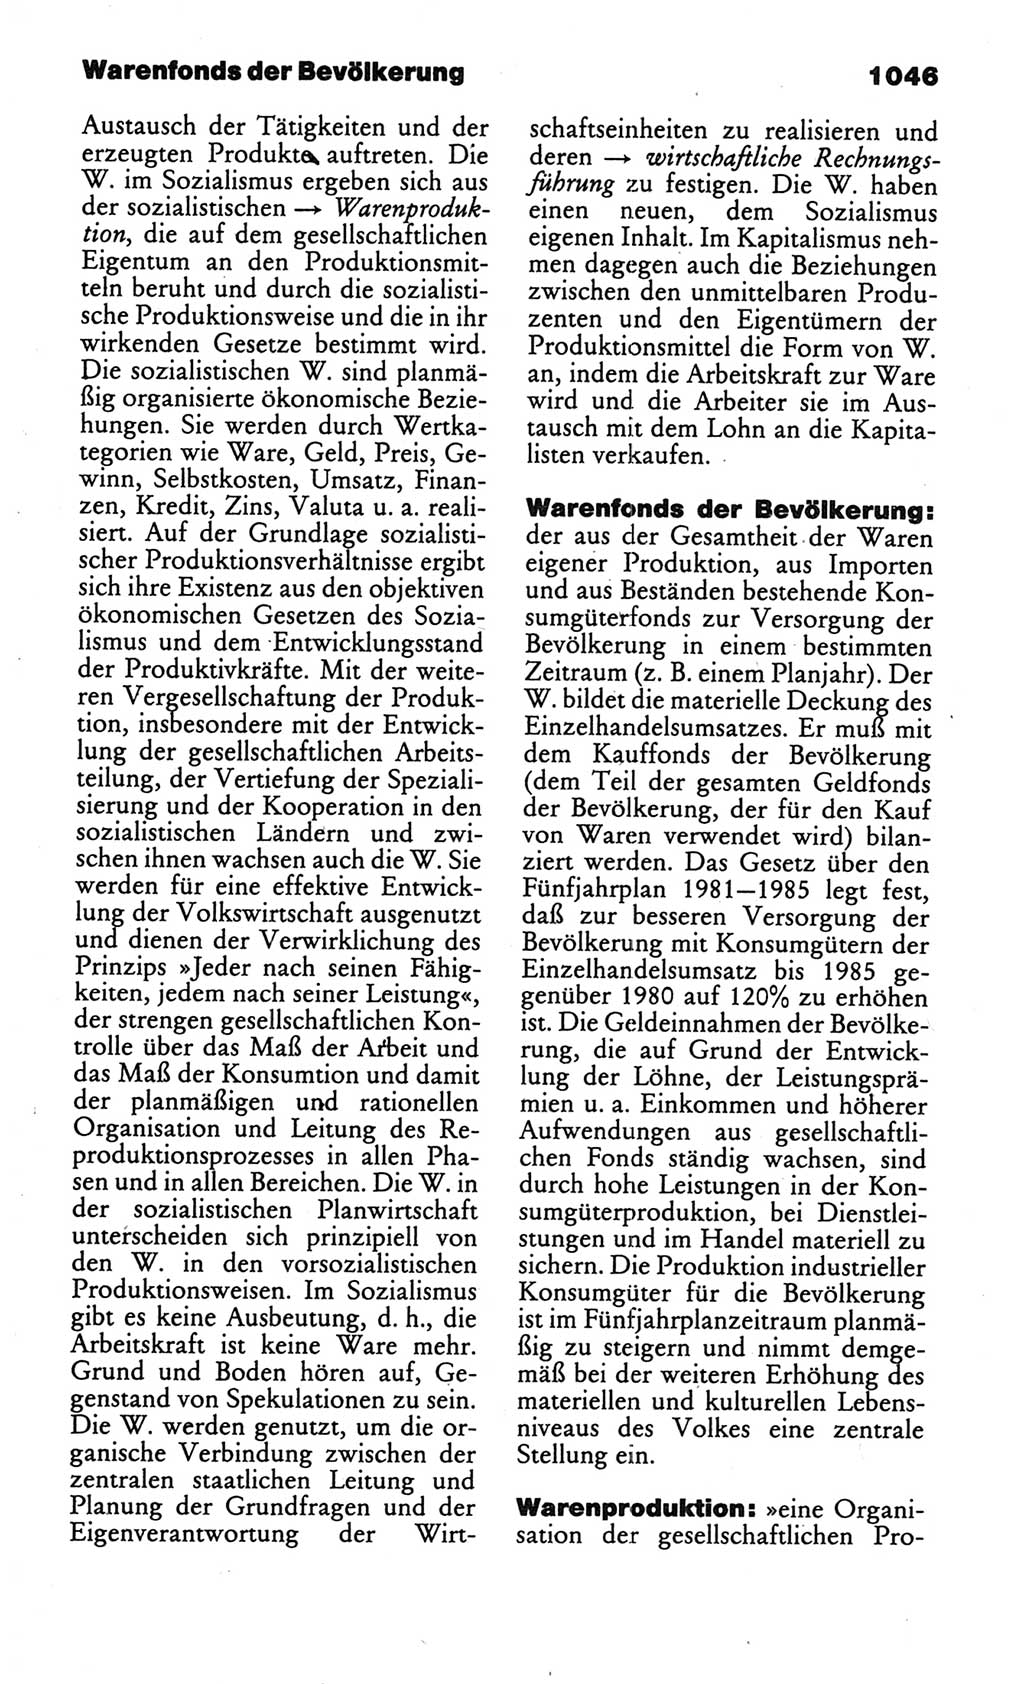 Kleines politisches Wörterbuch [Deutsche Demokratische Republik (DDR)] 1986, Seite 1046 (Kl. pol. Wb. DDR 1986, S. 1046)